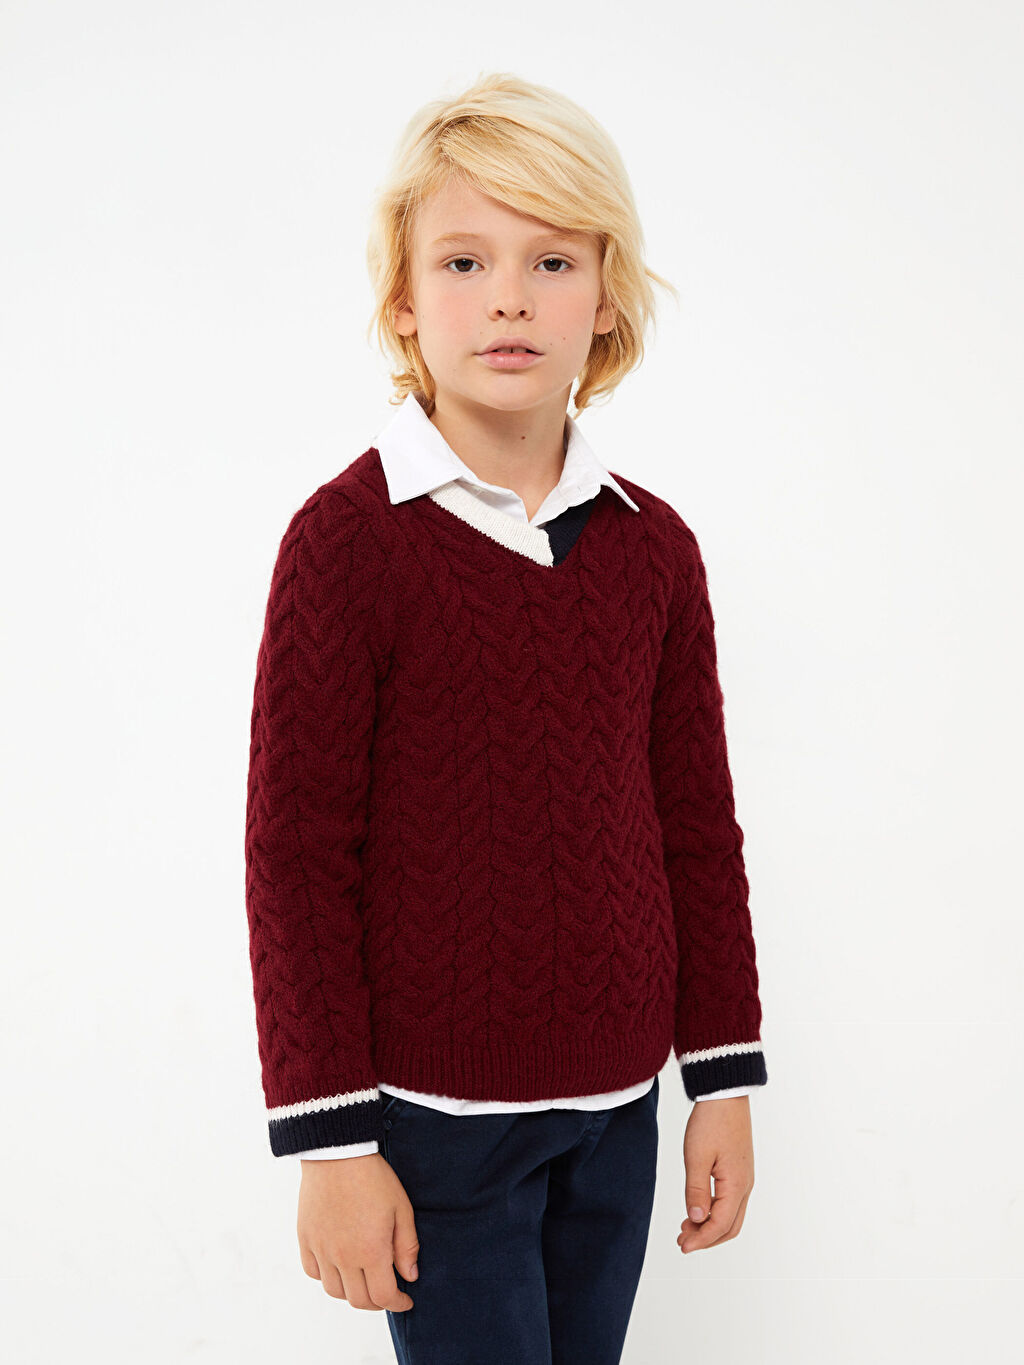 Трикотажный свитер для мальчика с длинным рукавом и V-образным вырезом Southblue трикотажный свитер для мальчика с длинным рукавом и v образным вырезом southblue